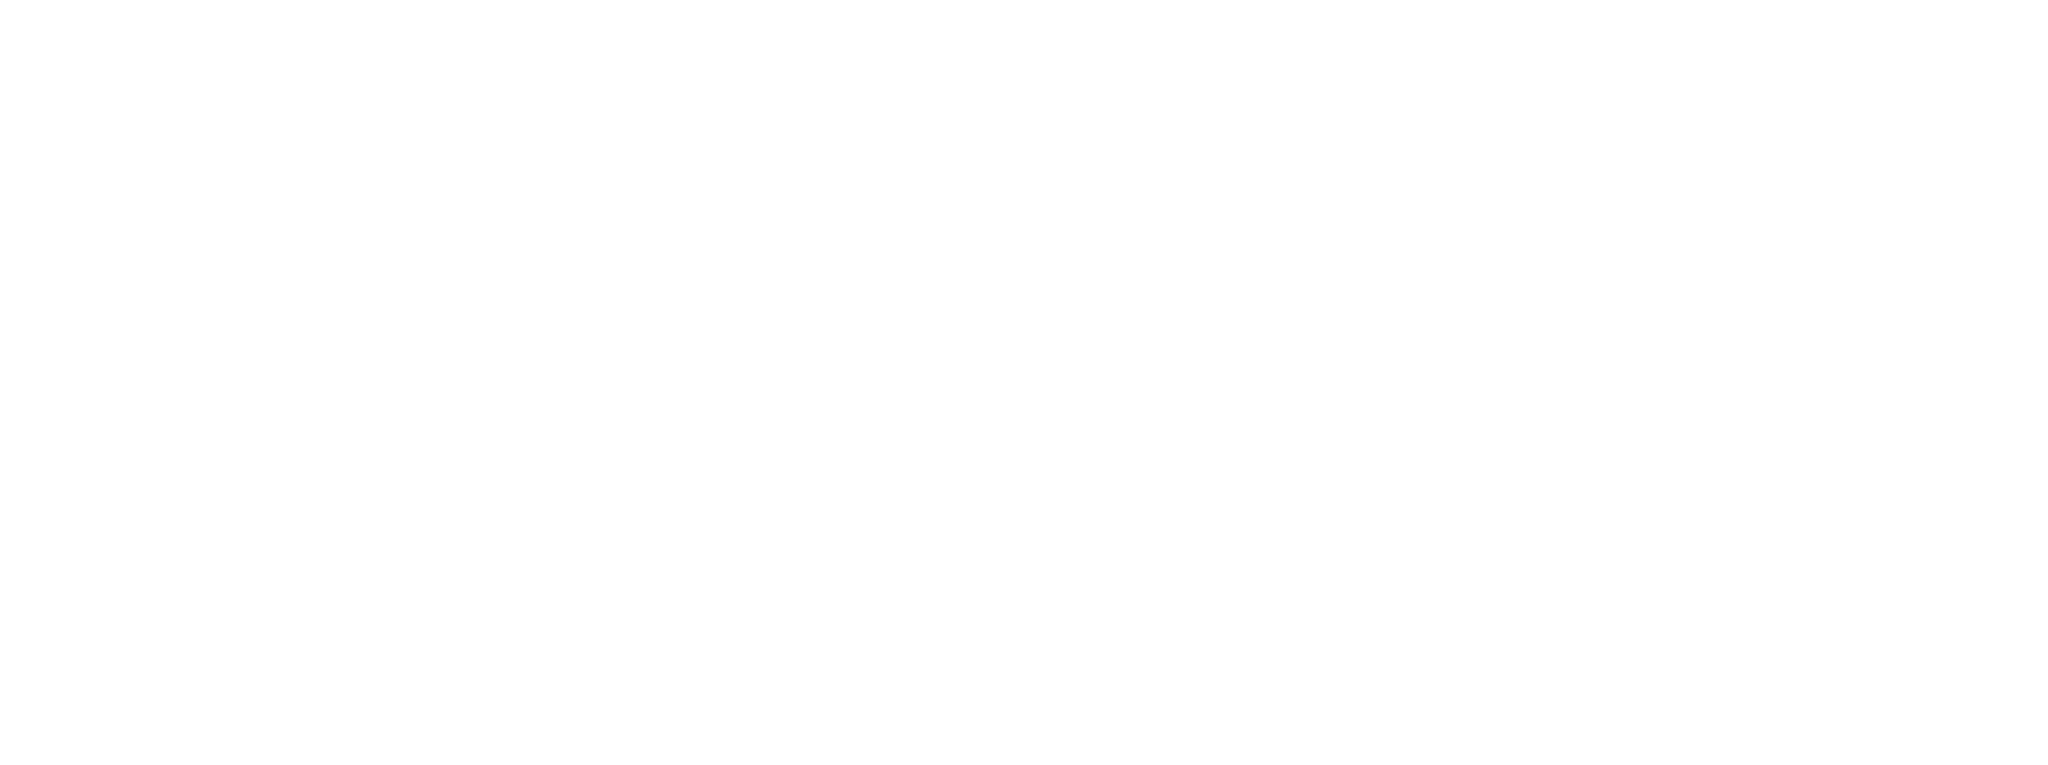 jachoos-logo-white